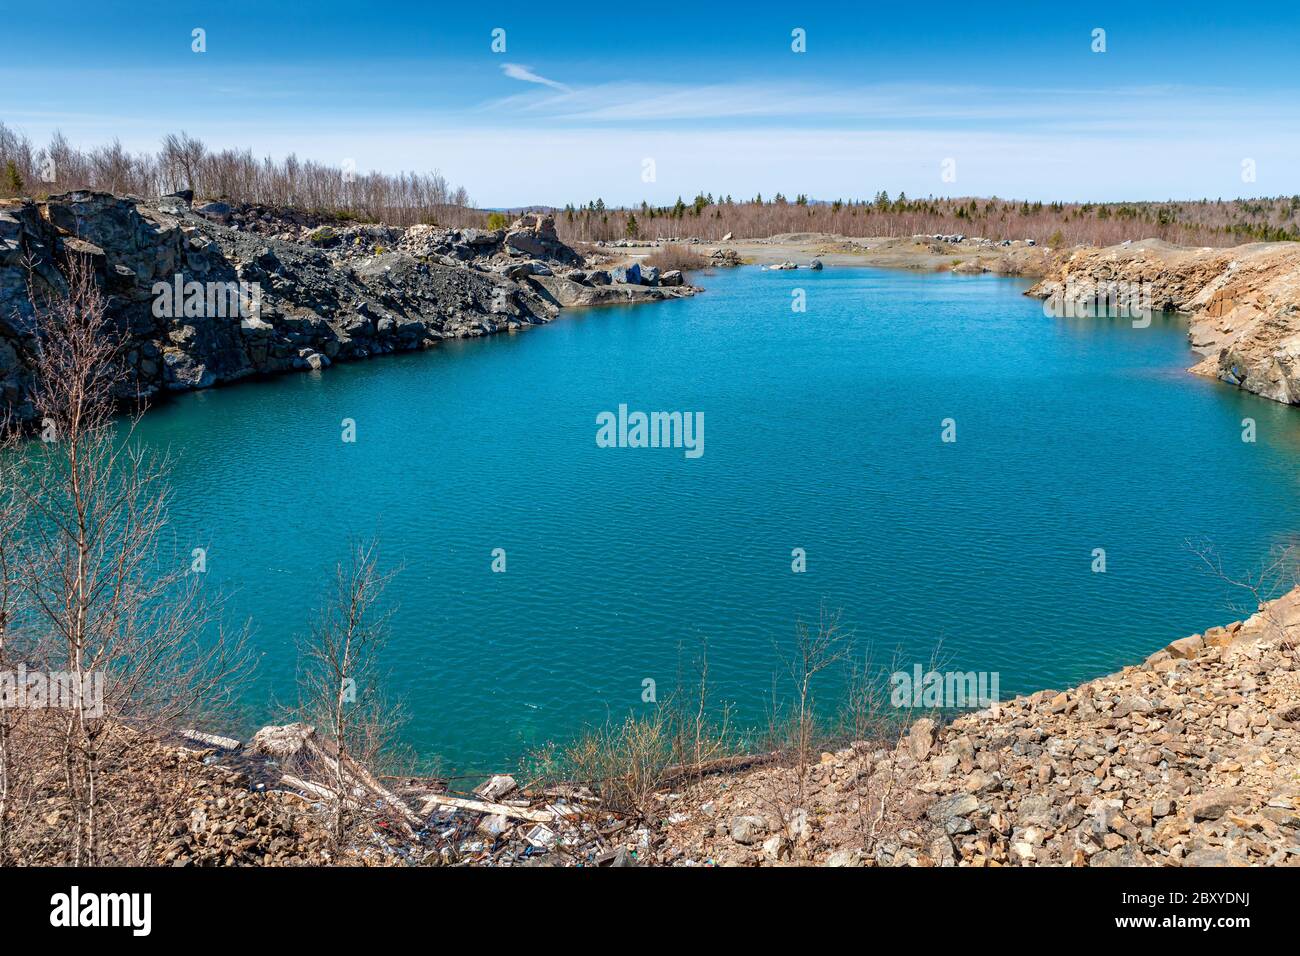 Une vieille carrière remplie d'eau, ce qui en fait un étang. L'eau est vert bleuâtre, avec le ciel au-dessus. Banque D'Images